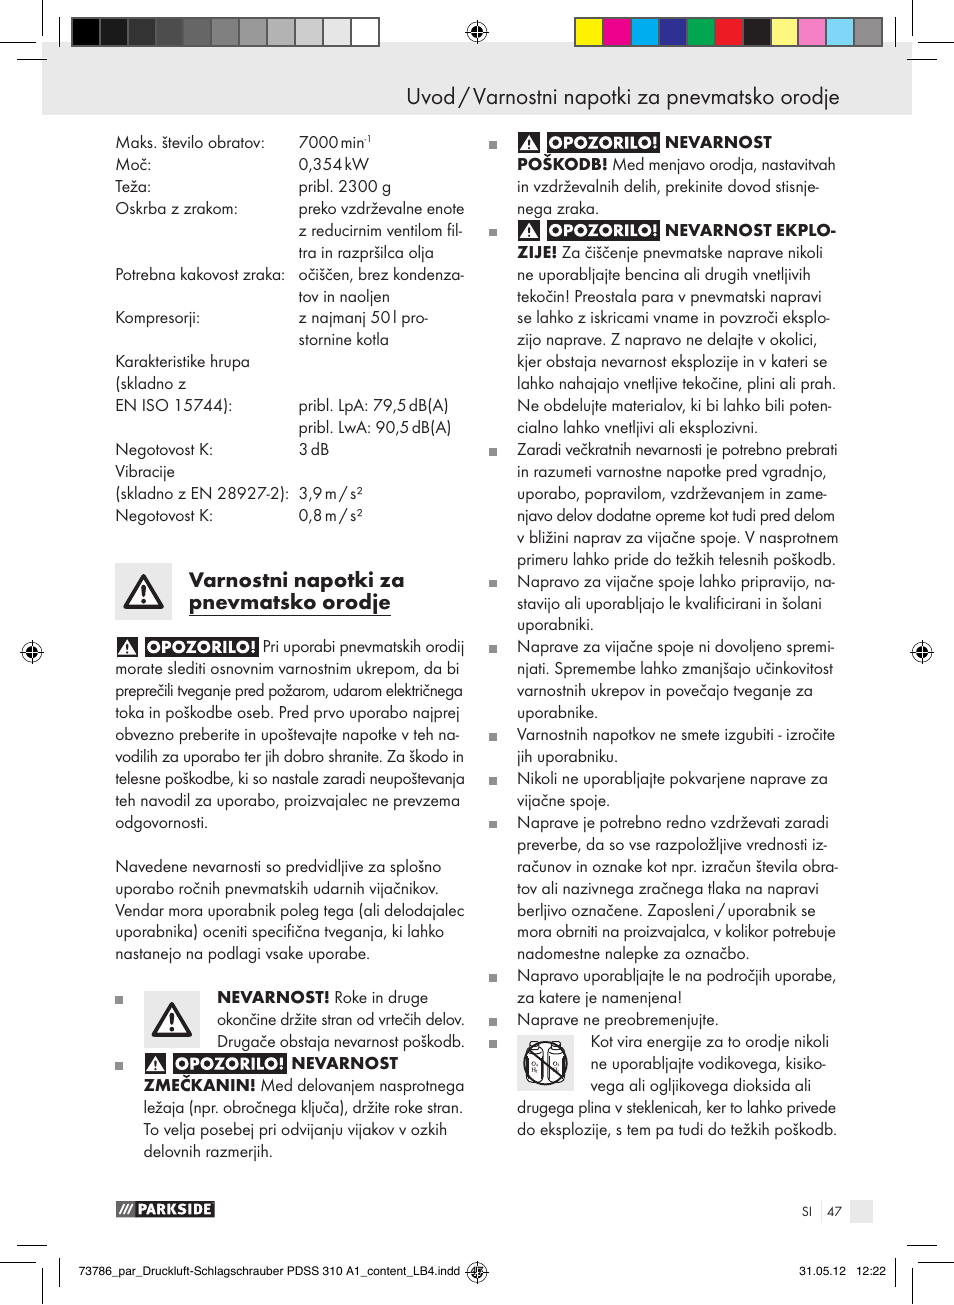 Uvod / varnostni napotki za pnevmatsko orodje uvod, Varnostni napotki za pnevmatsko  orodje | Parkside PDSS 310 A1 User Manual | Page 47 / 98 | Original mode